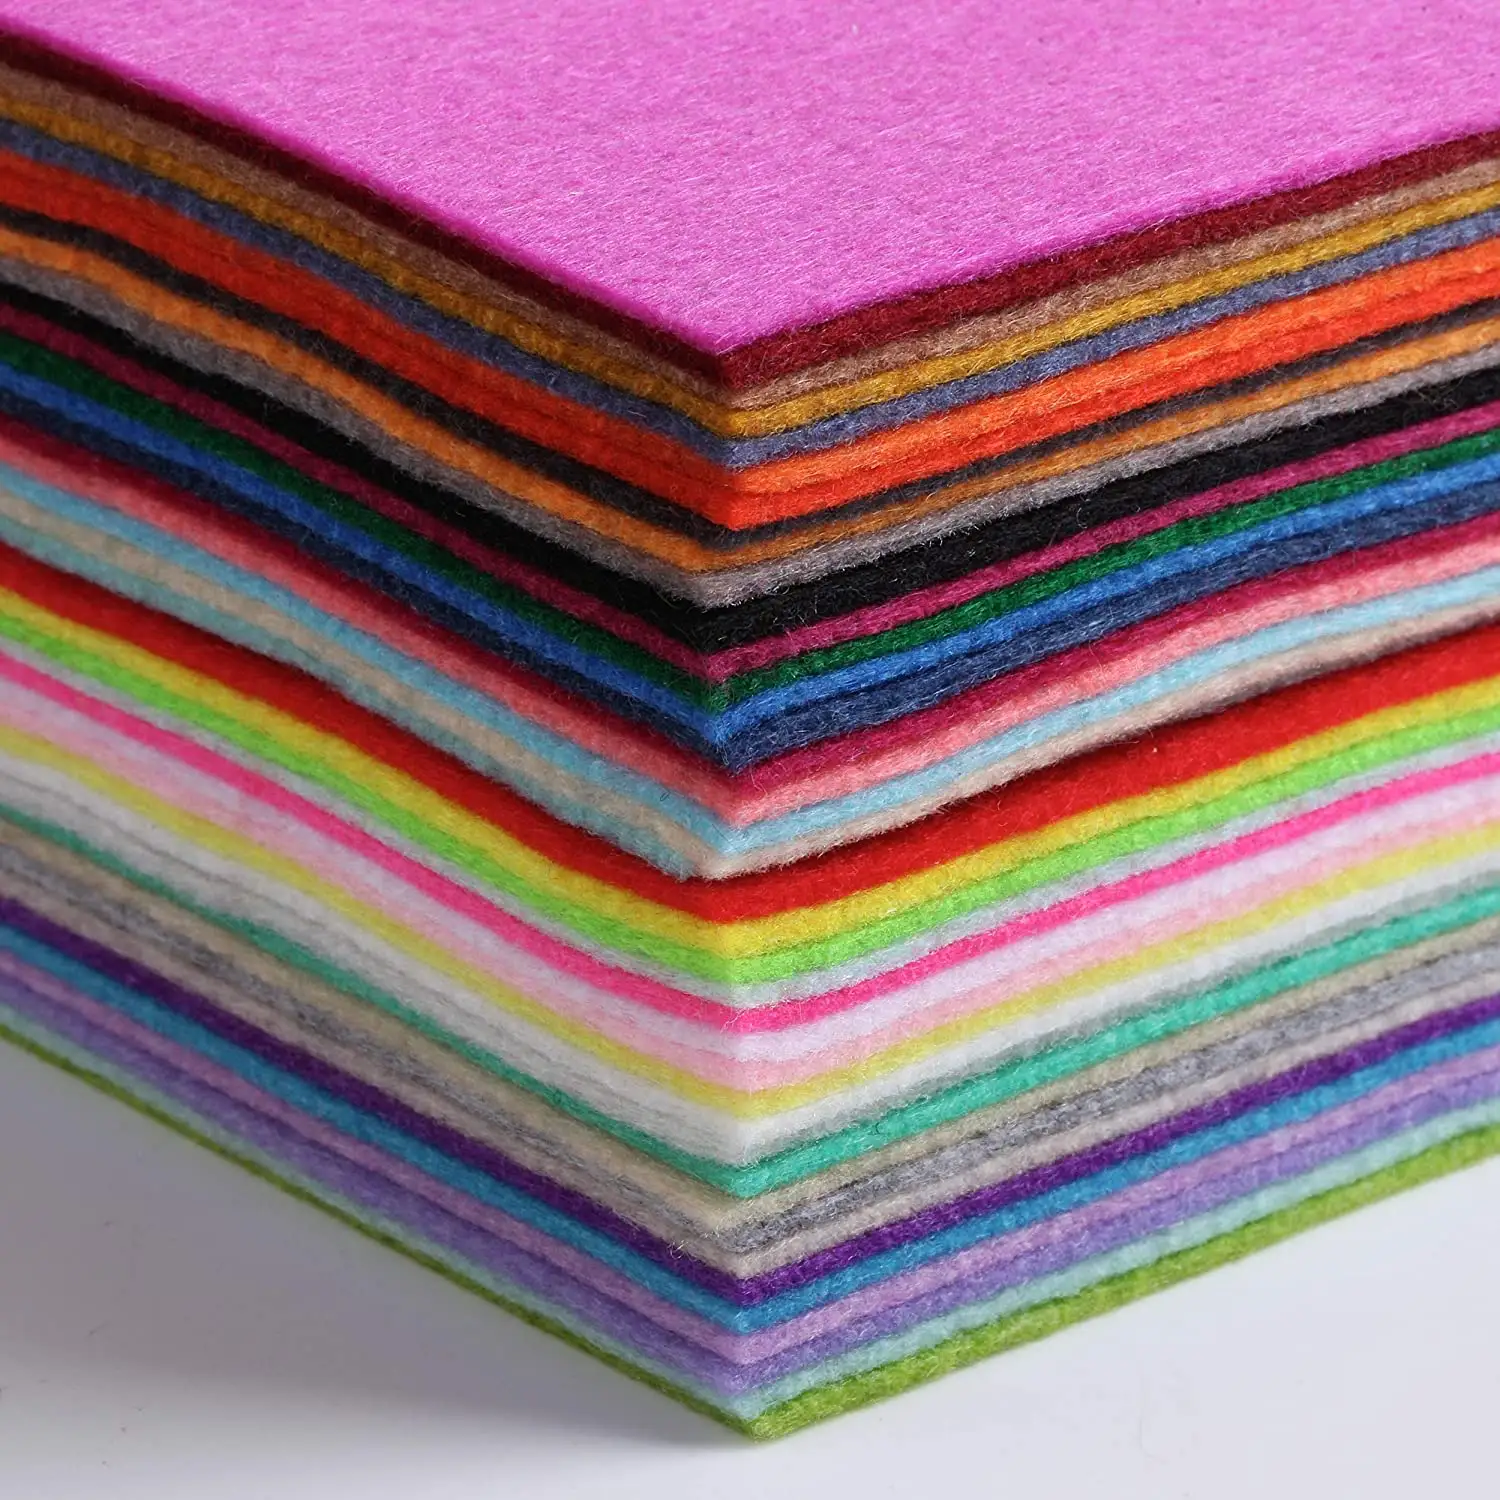 40 paket 4x4 inç çeşitli renkler keçe kağıt baskılı Glitter yumuşak 1MM yün kumaş keçe levhalar DIY dikiş zanaat Patchwork